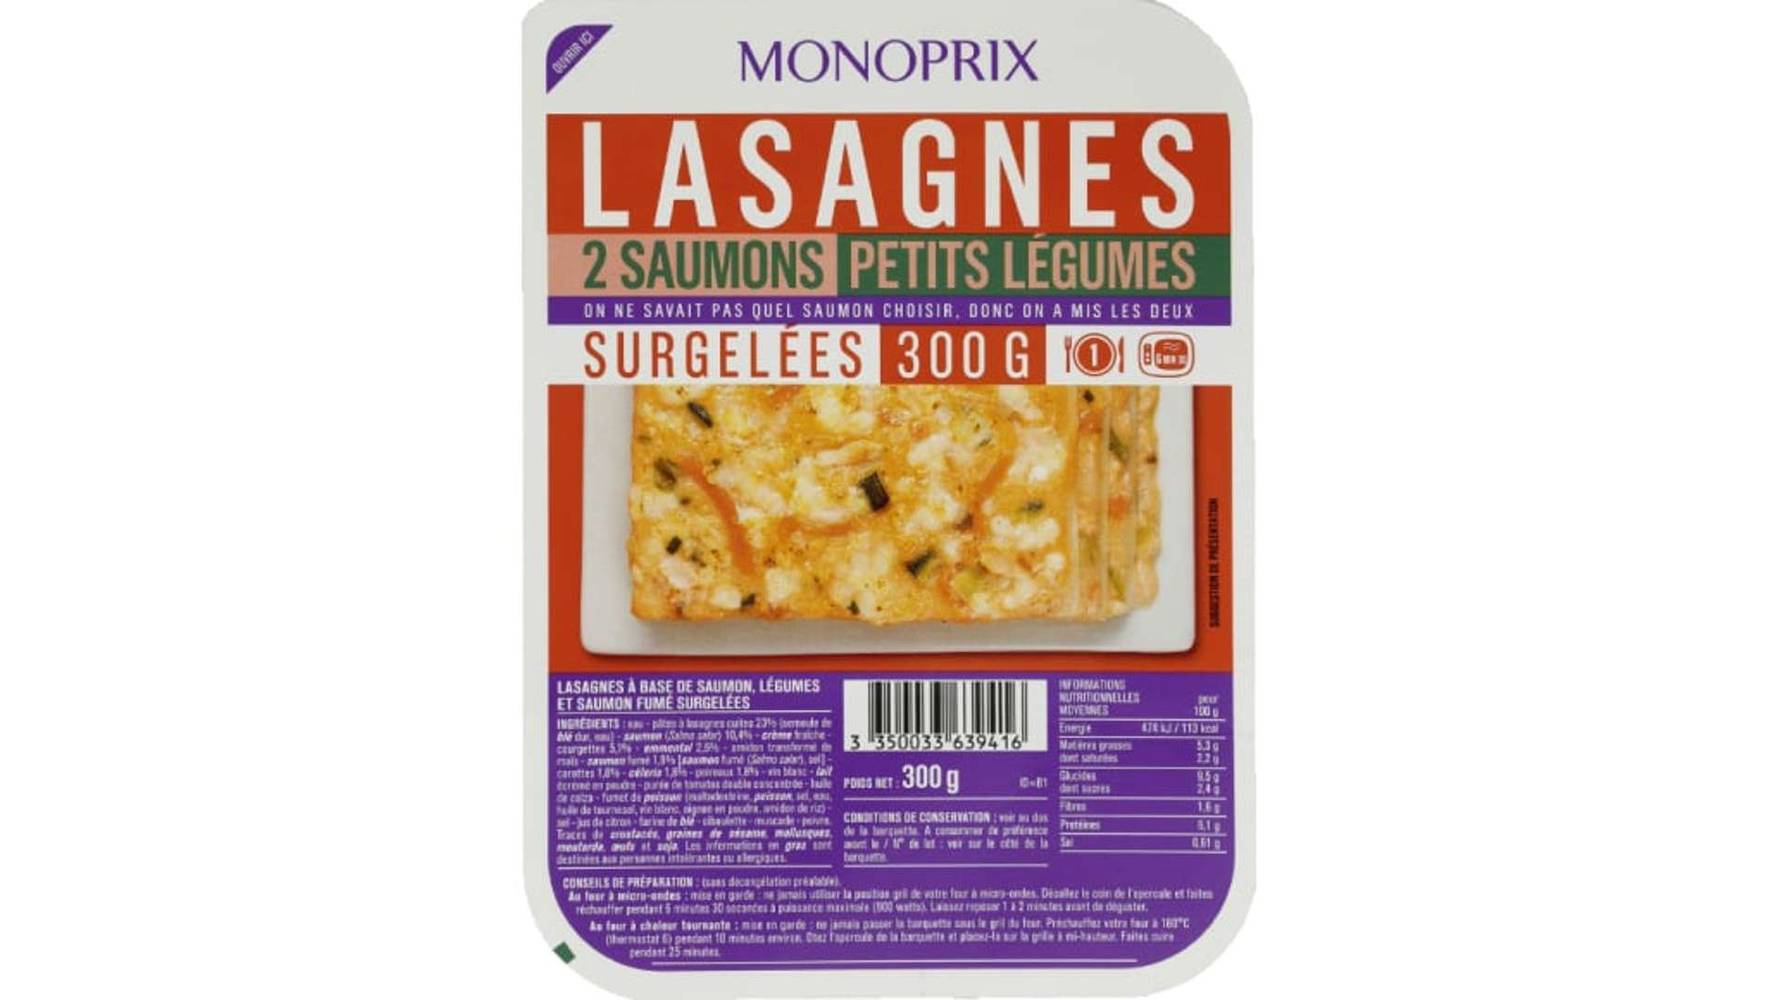 Monoprix Lasagnes 2 saumons petits légumes, surgélées La barquette de 300g